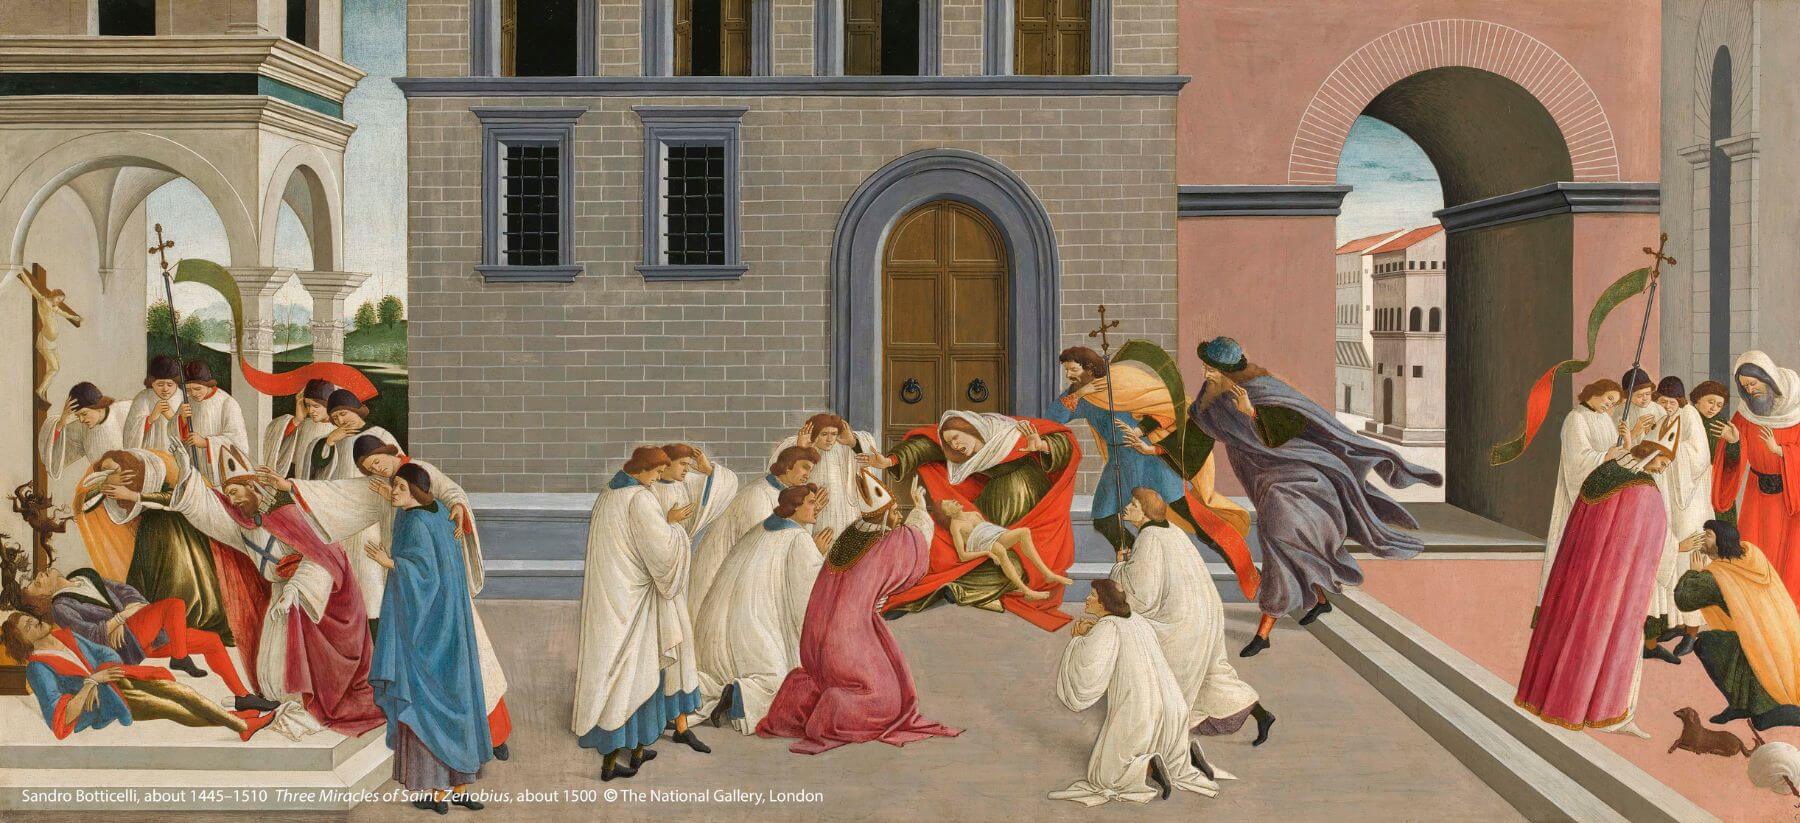 桑德羅．波堤切利（約1445-1510）作品〈聖澤諾比烏斯的三個奇蹟〉。